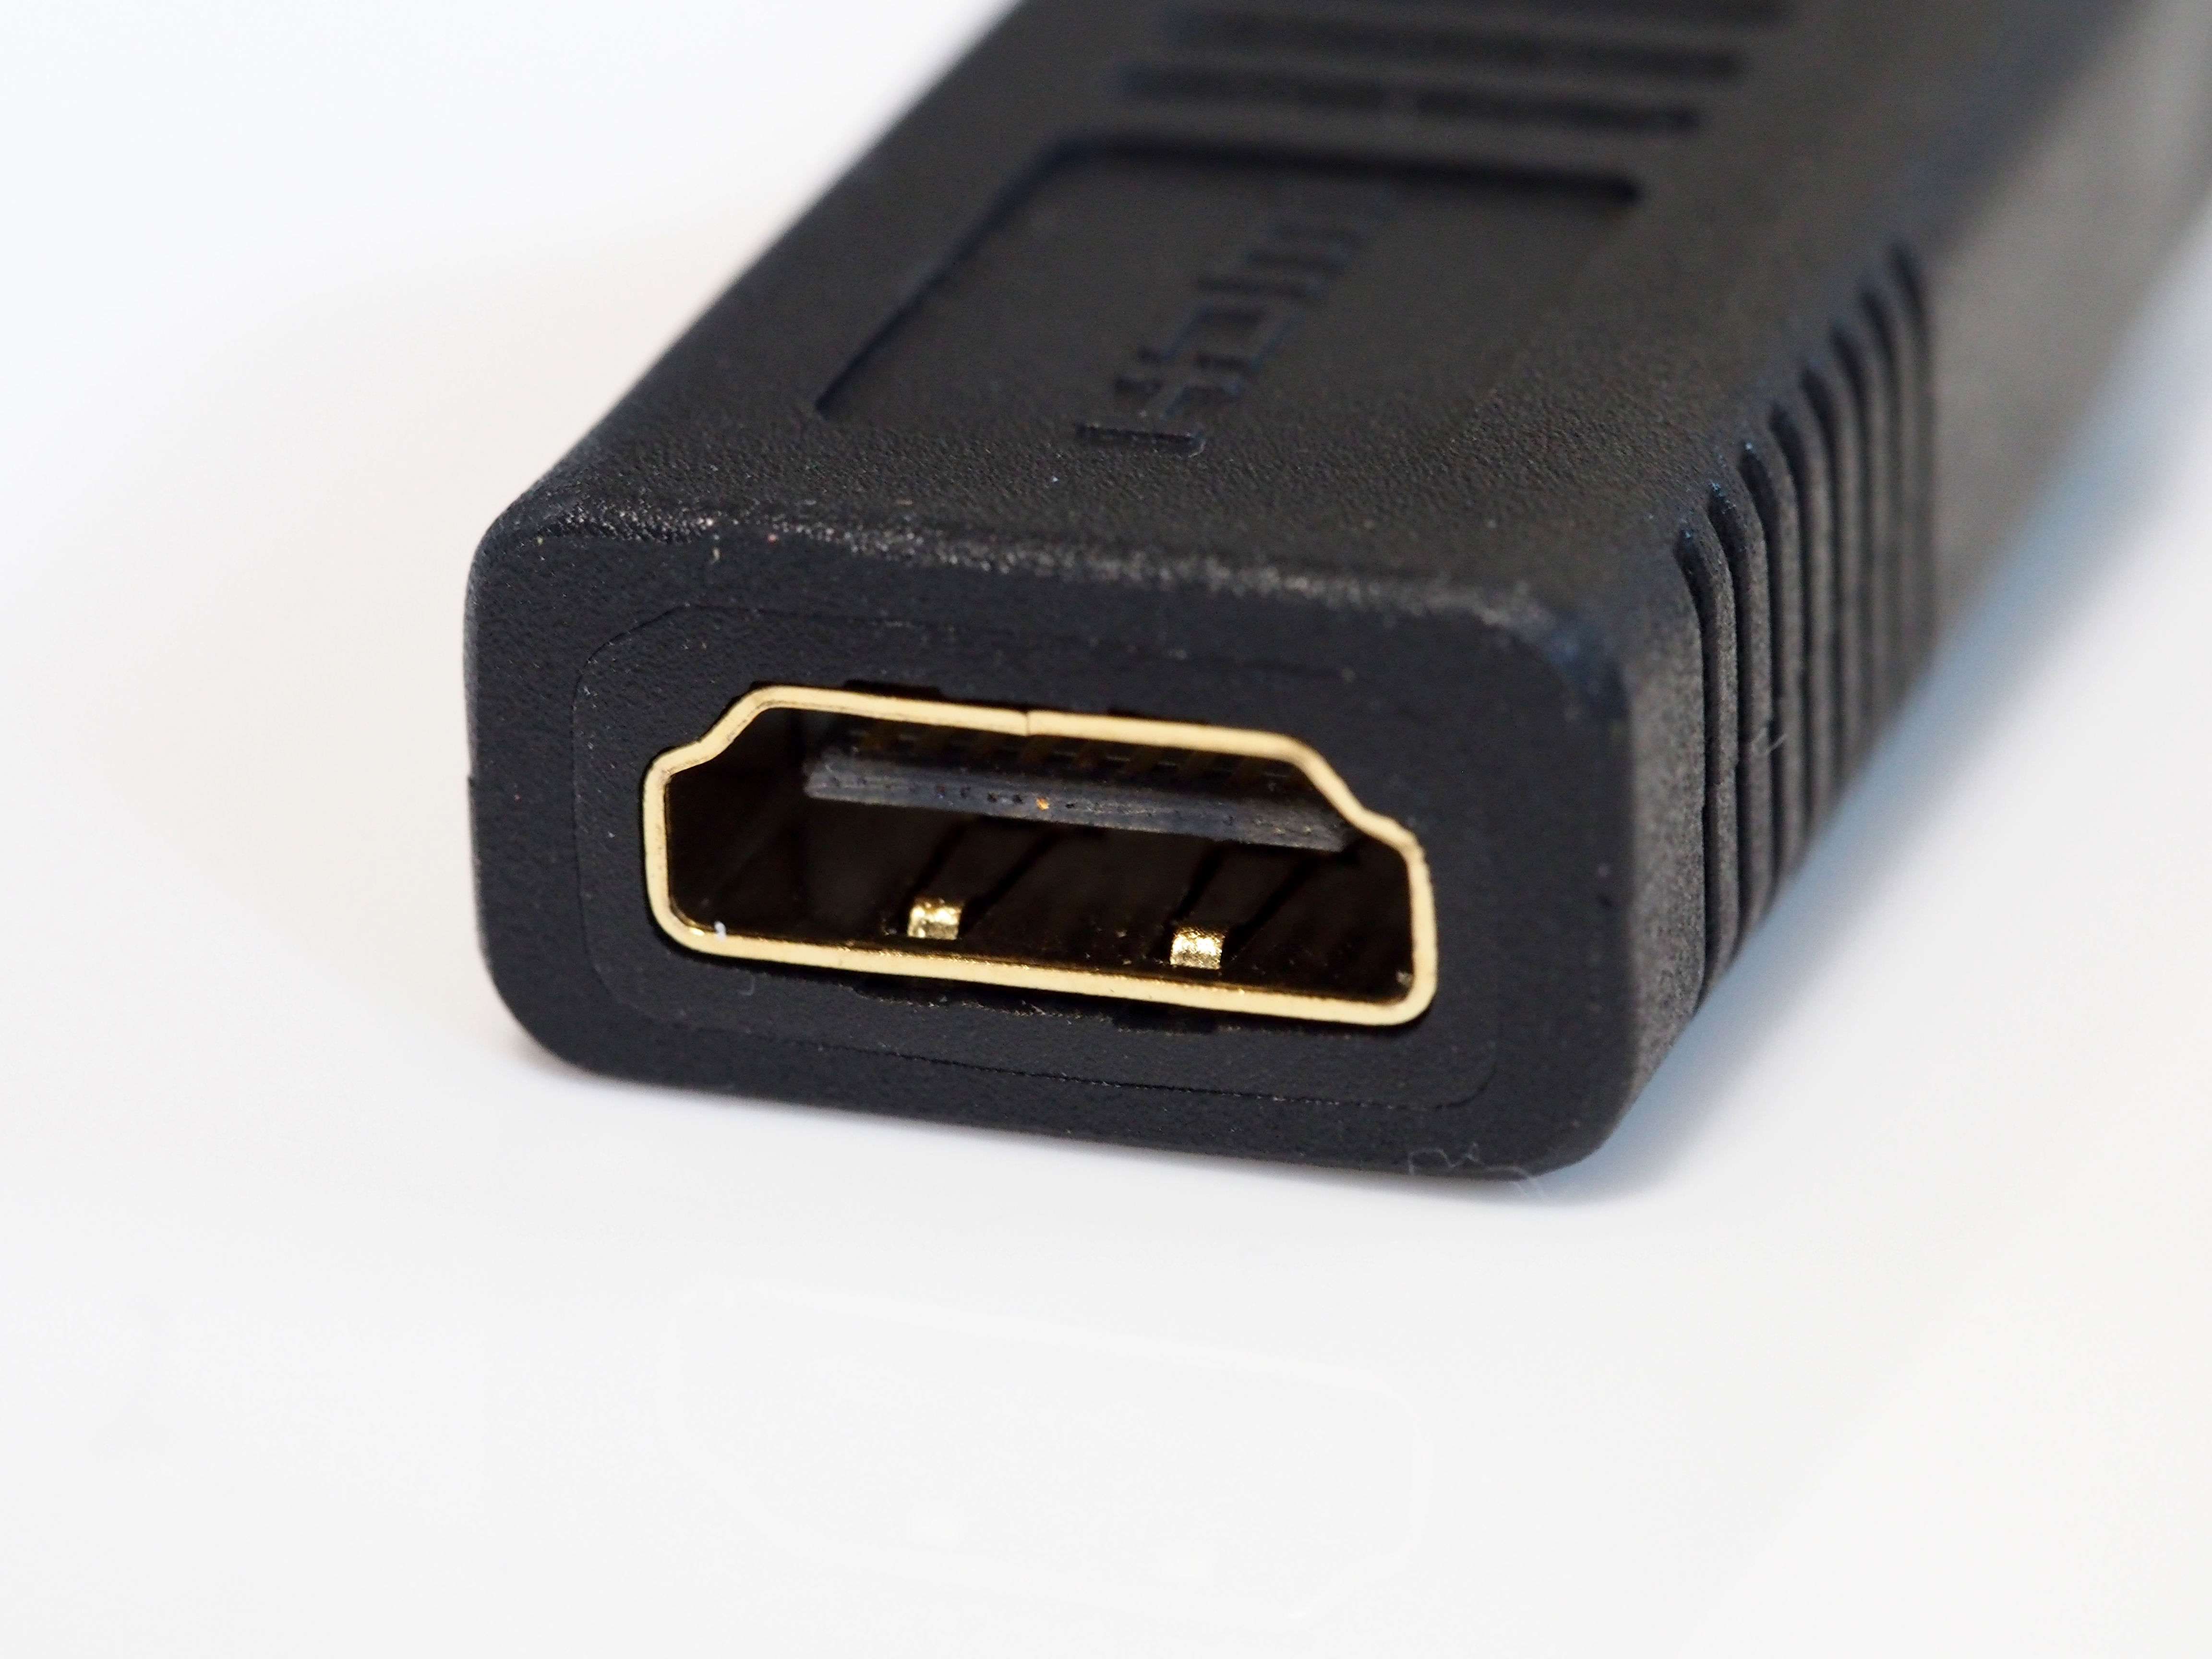 PC/タブレット 電子ブックリーダー ELECOM AD-DPHBK (DisplayPort - HDMI 変換アダプタ) のレビュー | iPentec